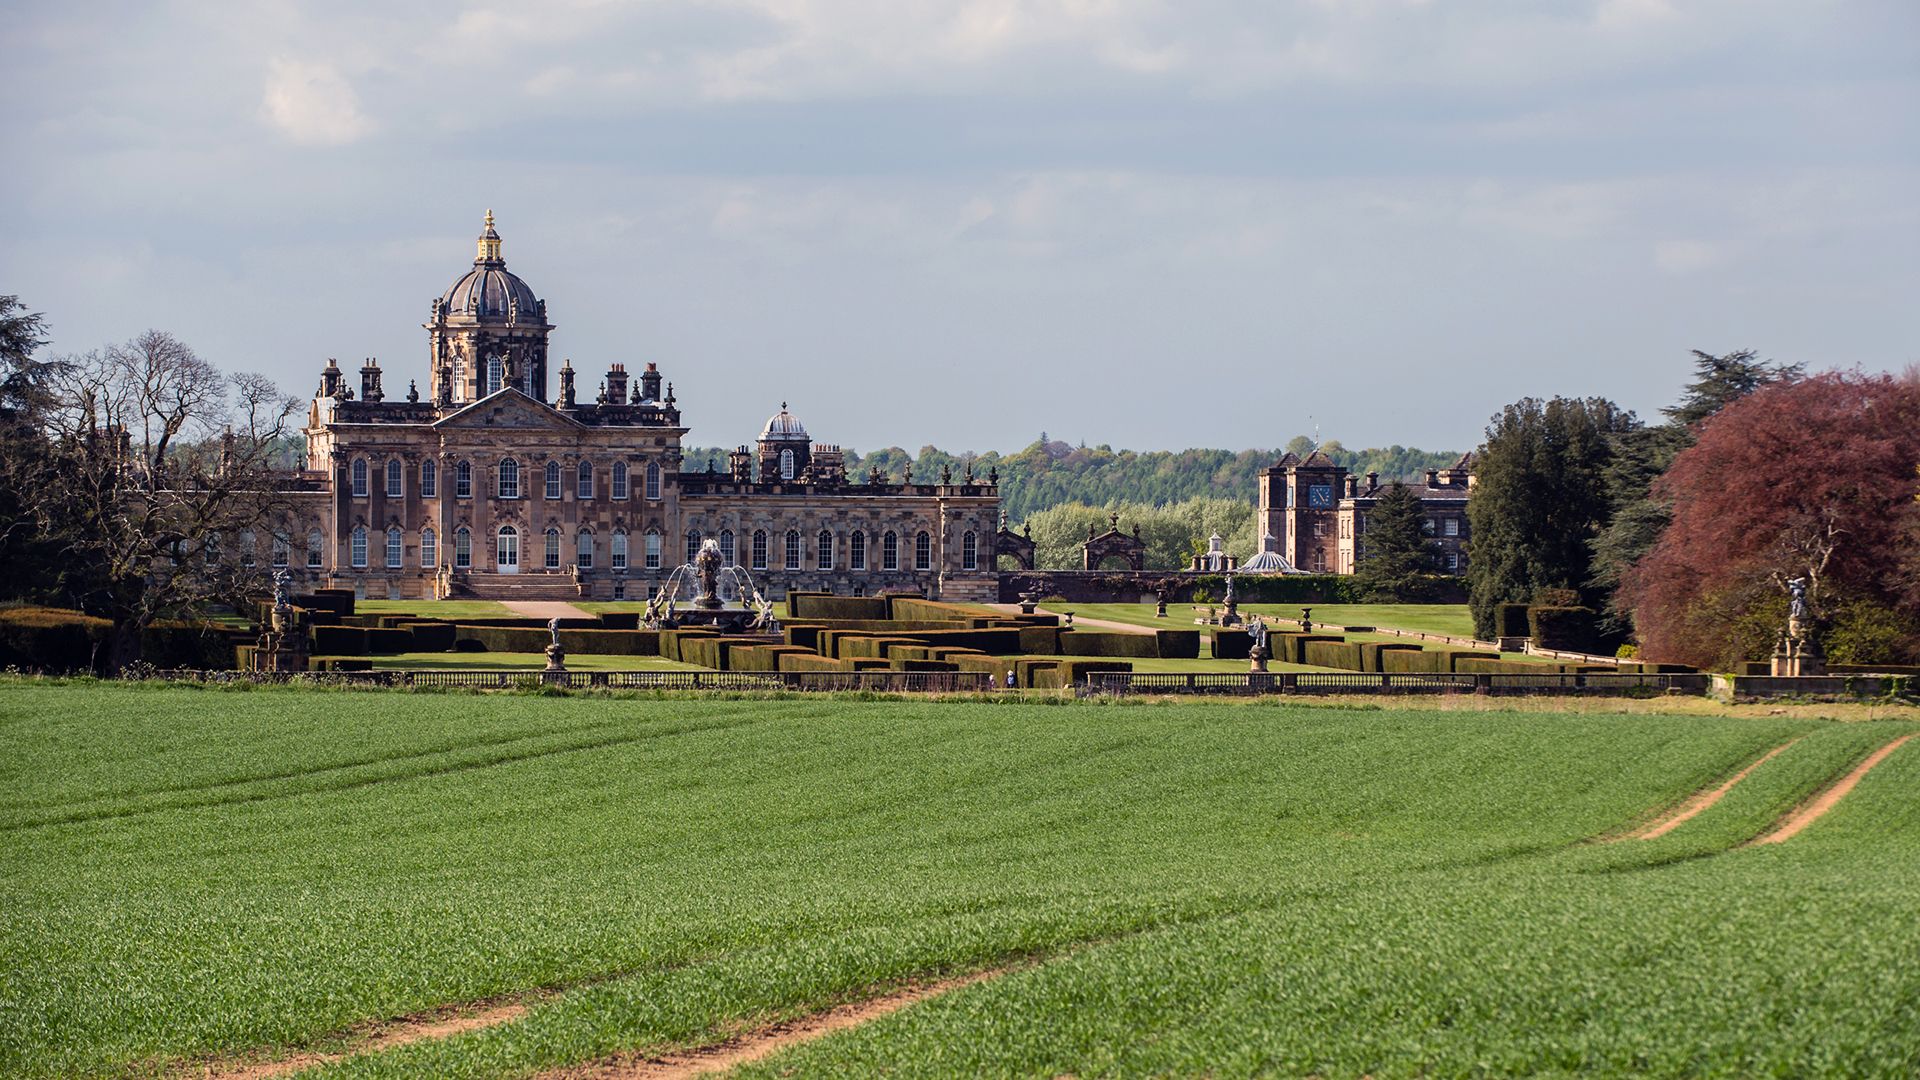 A view towards Castle Howard estate across a field